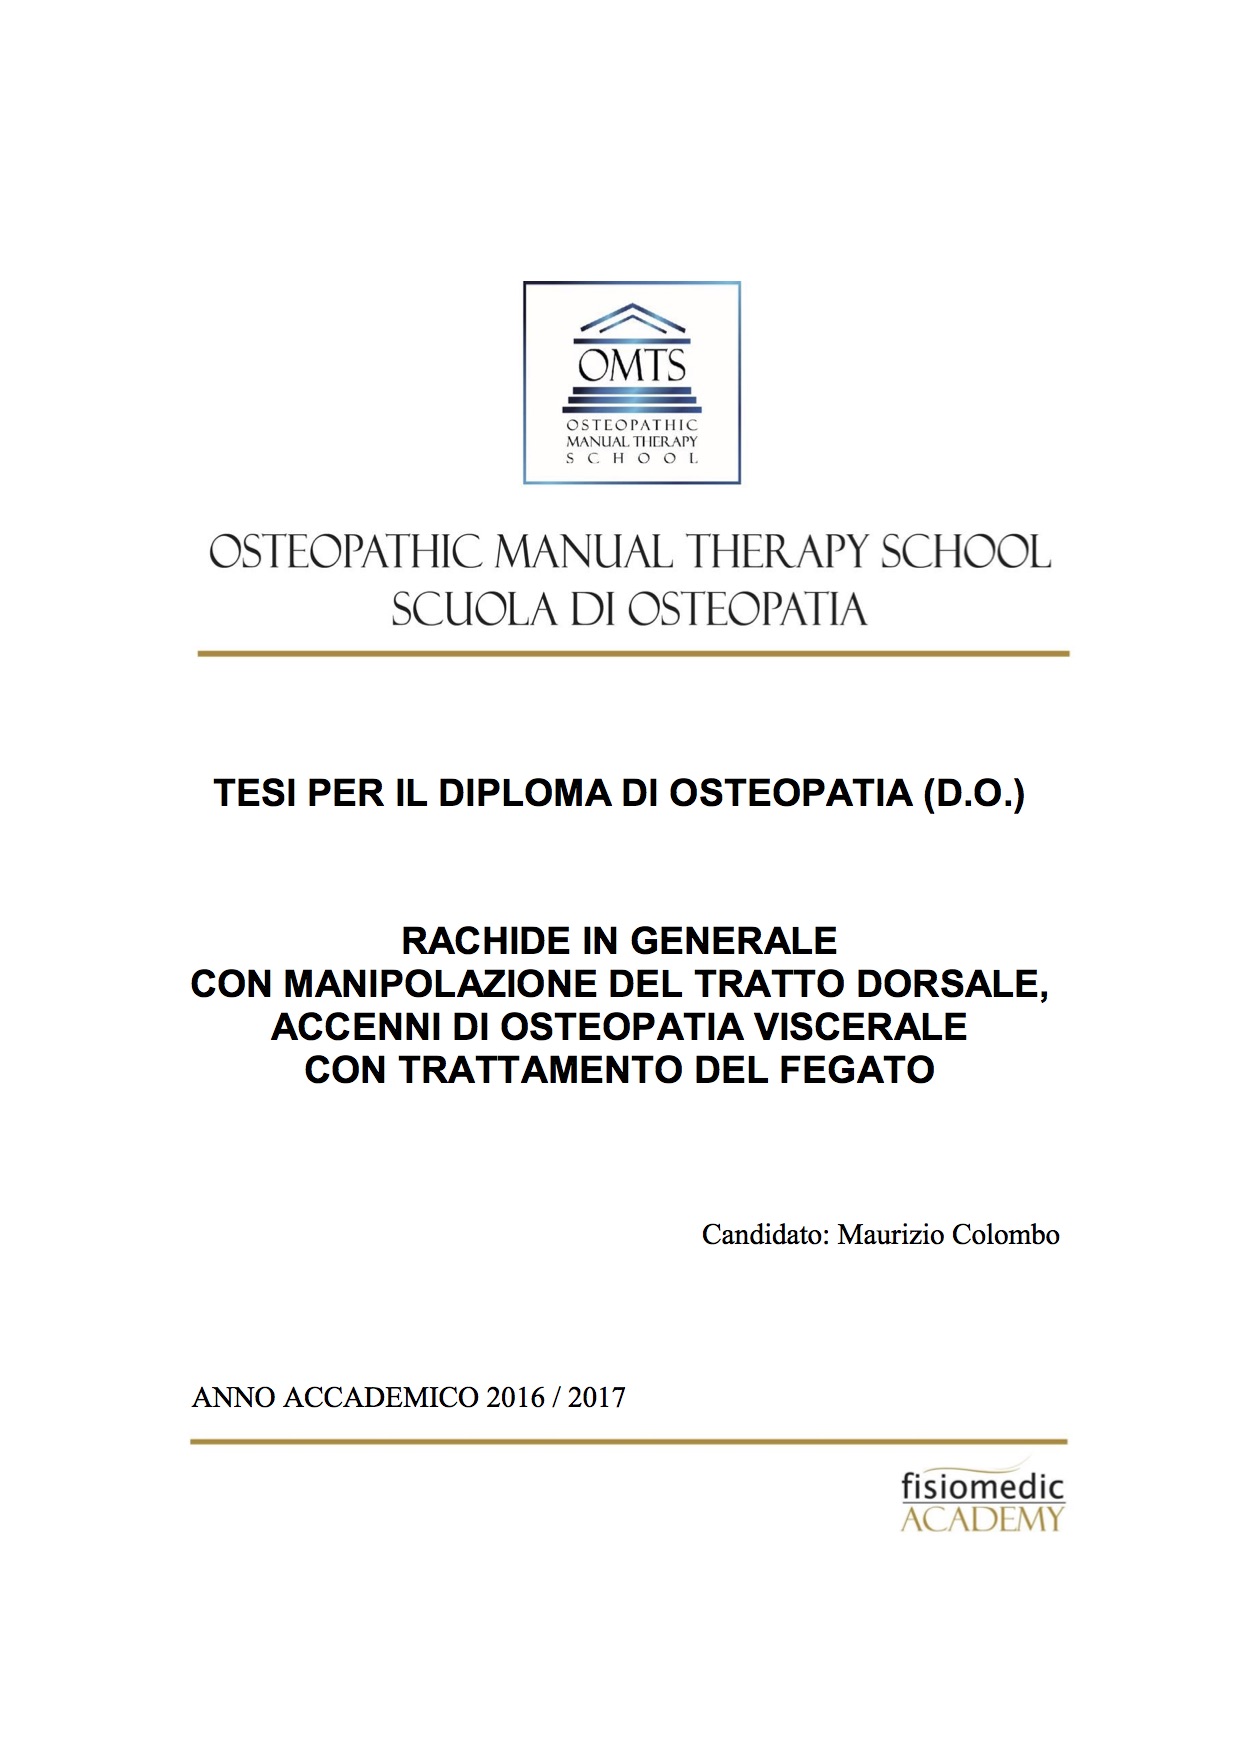 Maurizio Colombo Tesi Diploma Osteopatia 2017